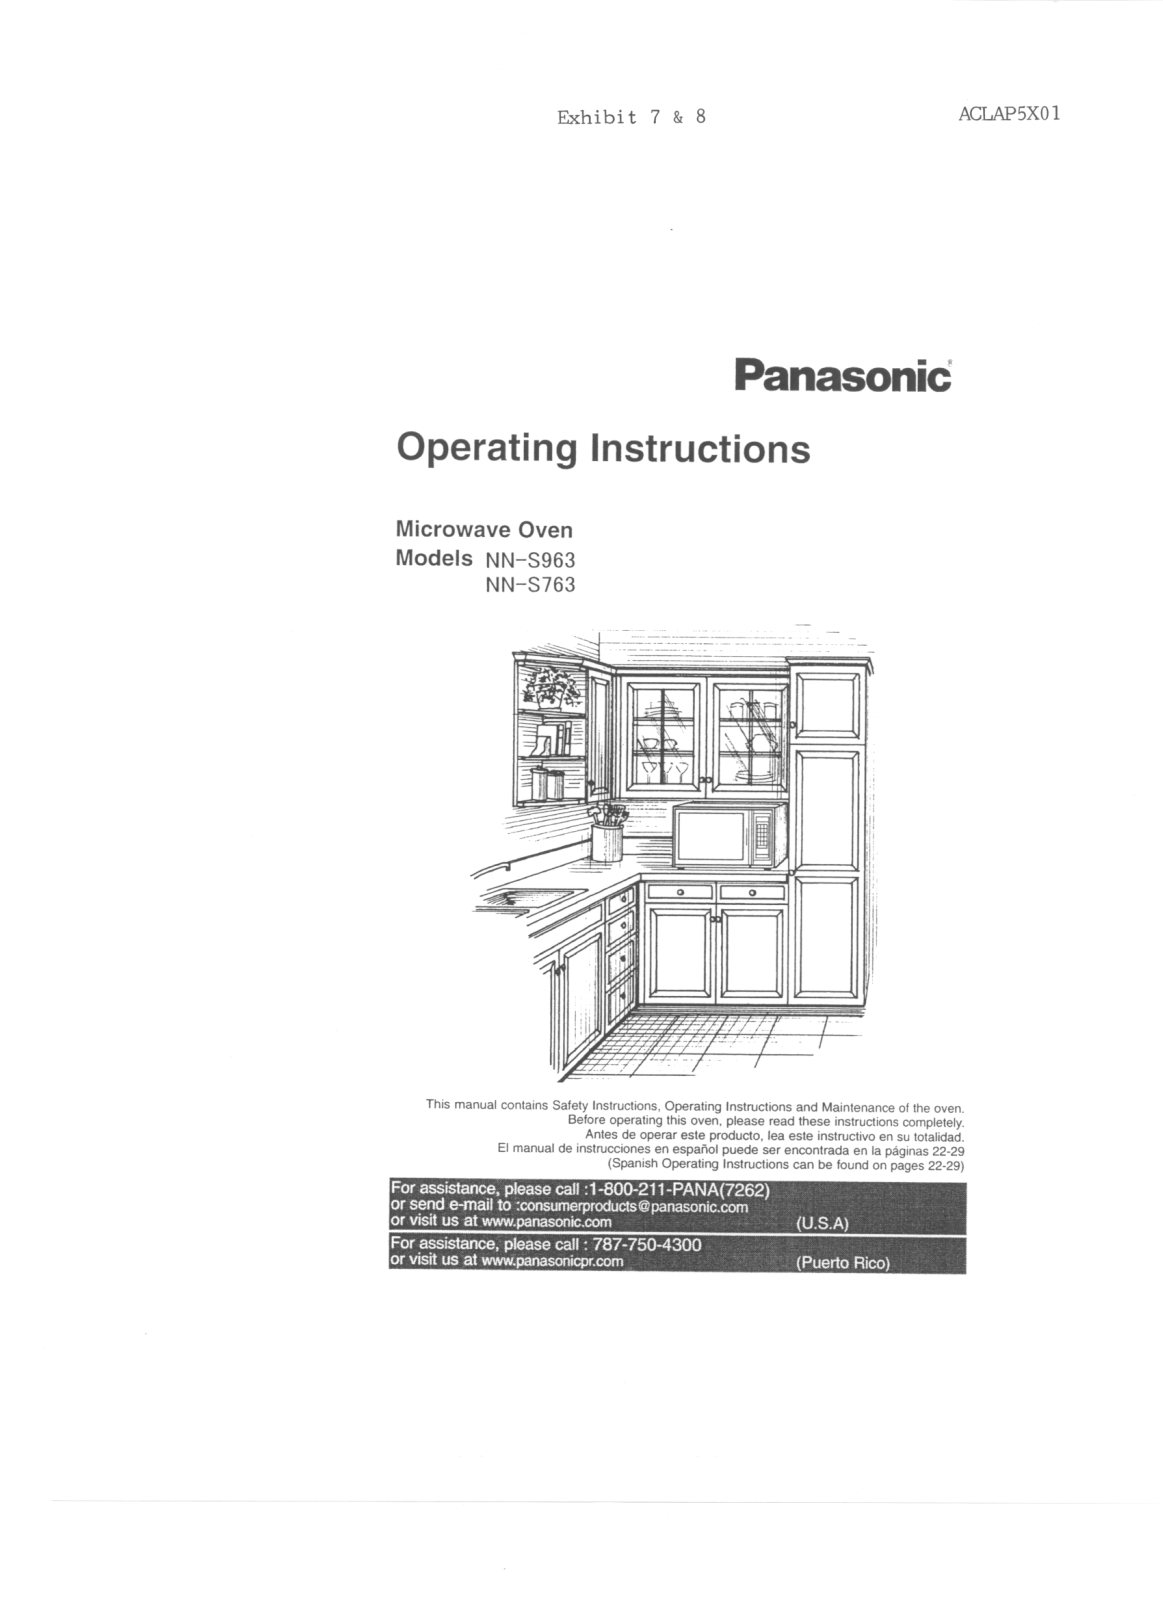 Panasonic AP5X01 Users Manual